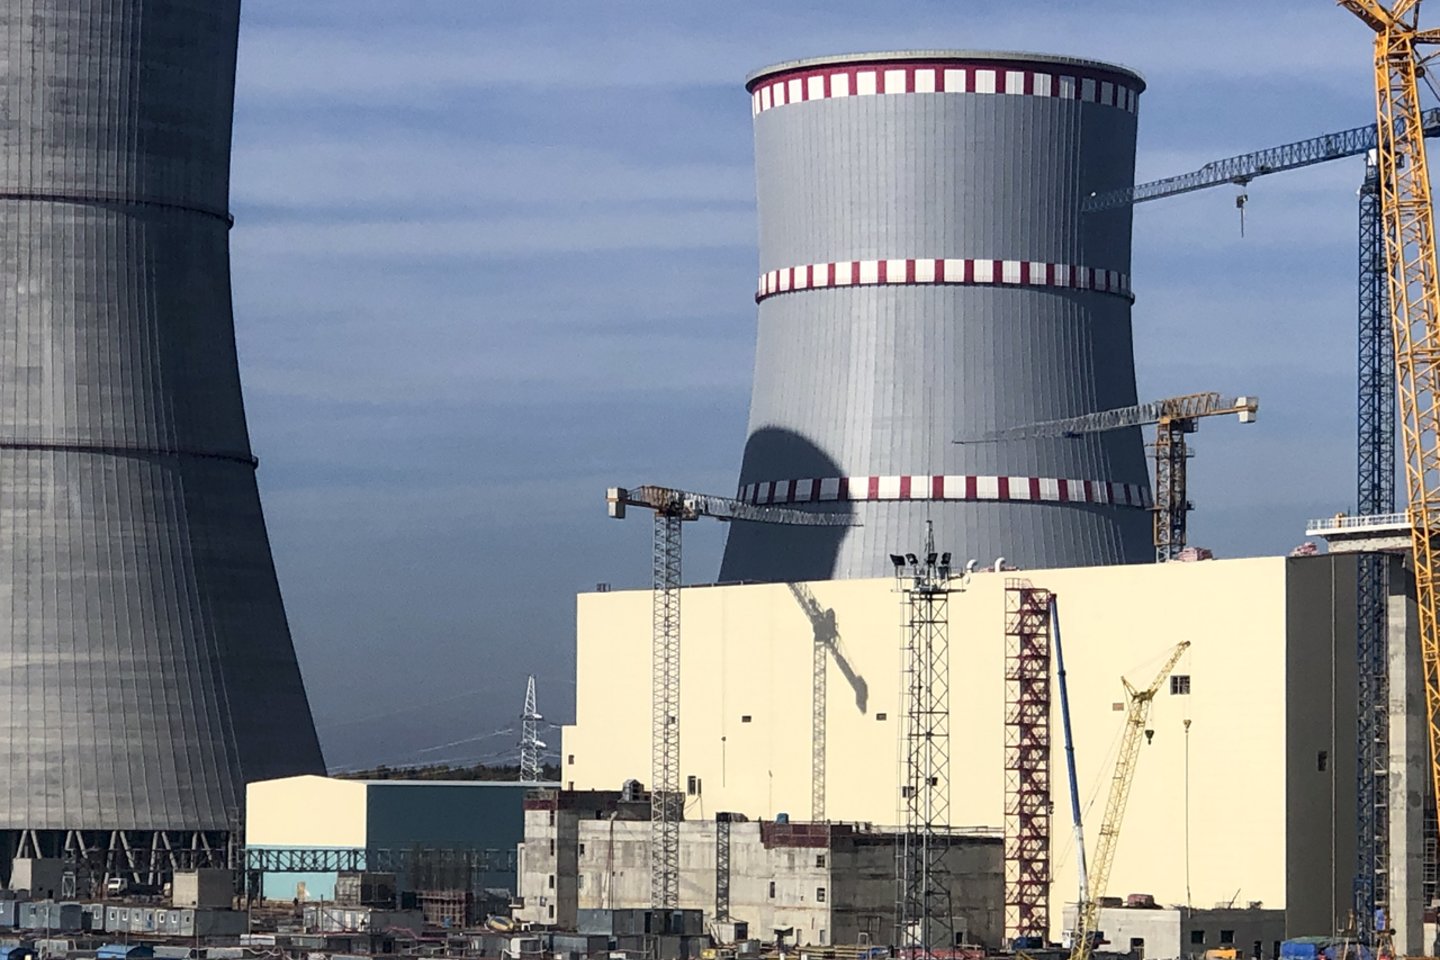 Praėjusį mėnesį Baltarusija Astravo AE pirmojo reaktoriaus įjungimo terminą nukėlė iš lapkričio į sausį, tokio sprendimo priežasčių aiškiai nenurodydama.<br>V.Ščiavinsko nuotr.